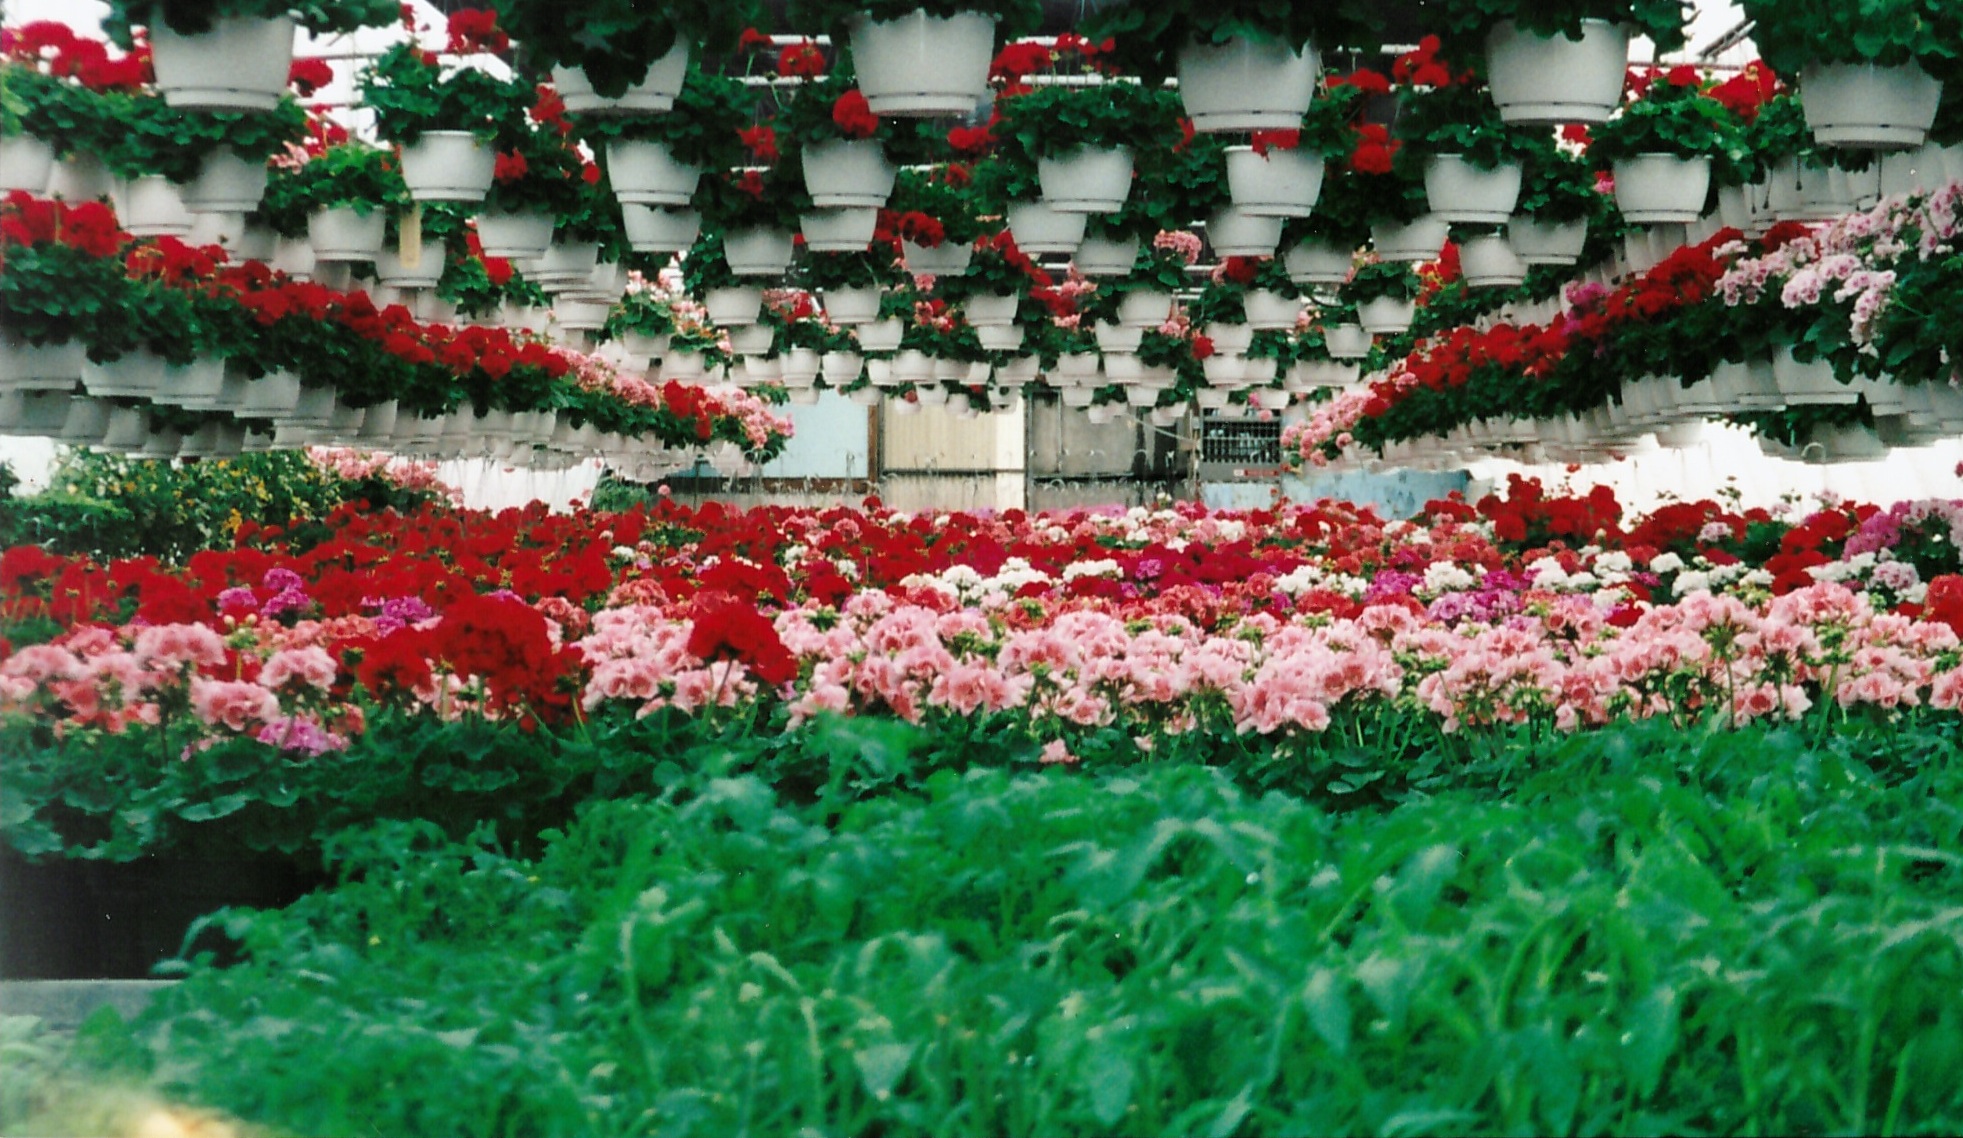 Geranium greenhouse, 2000